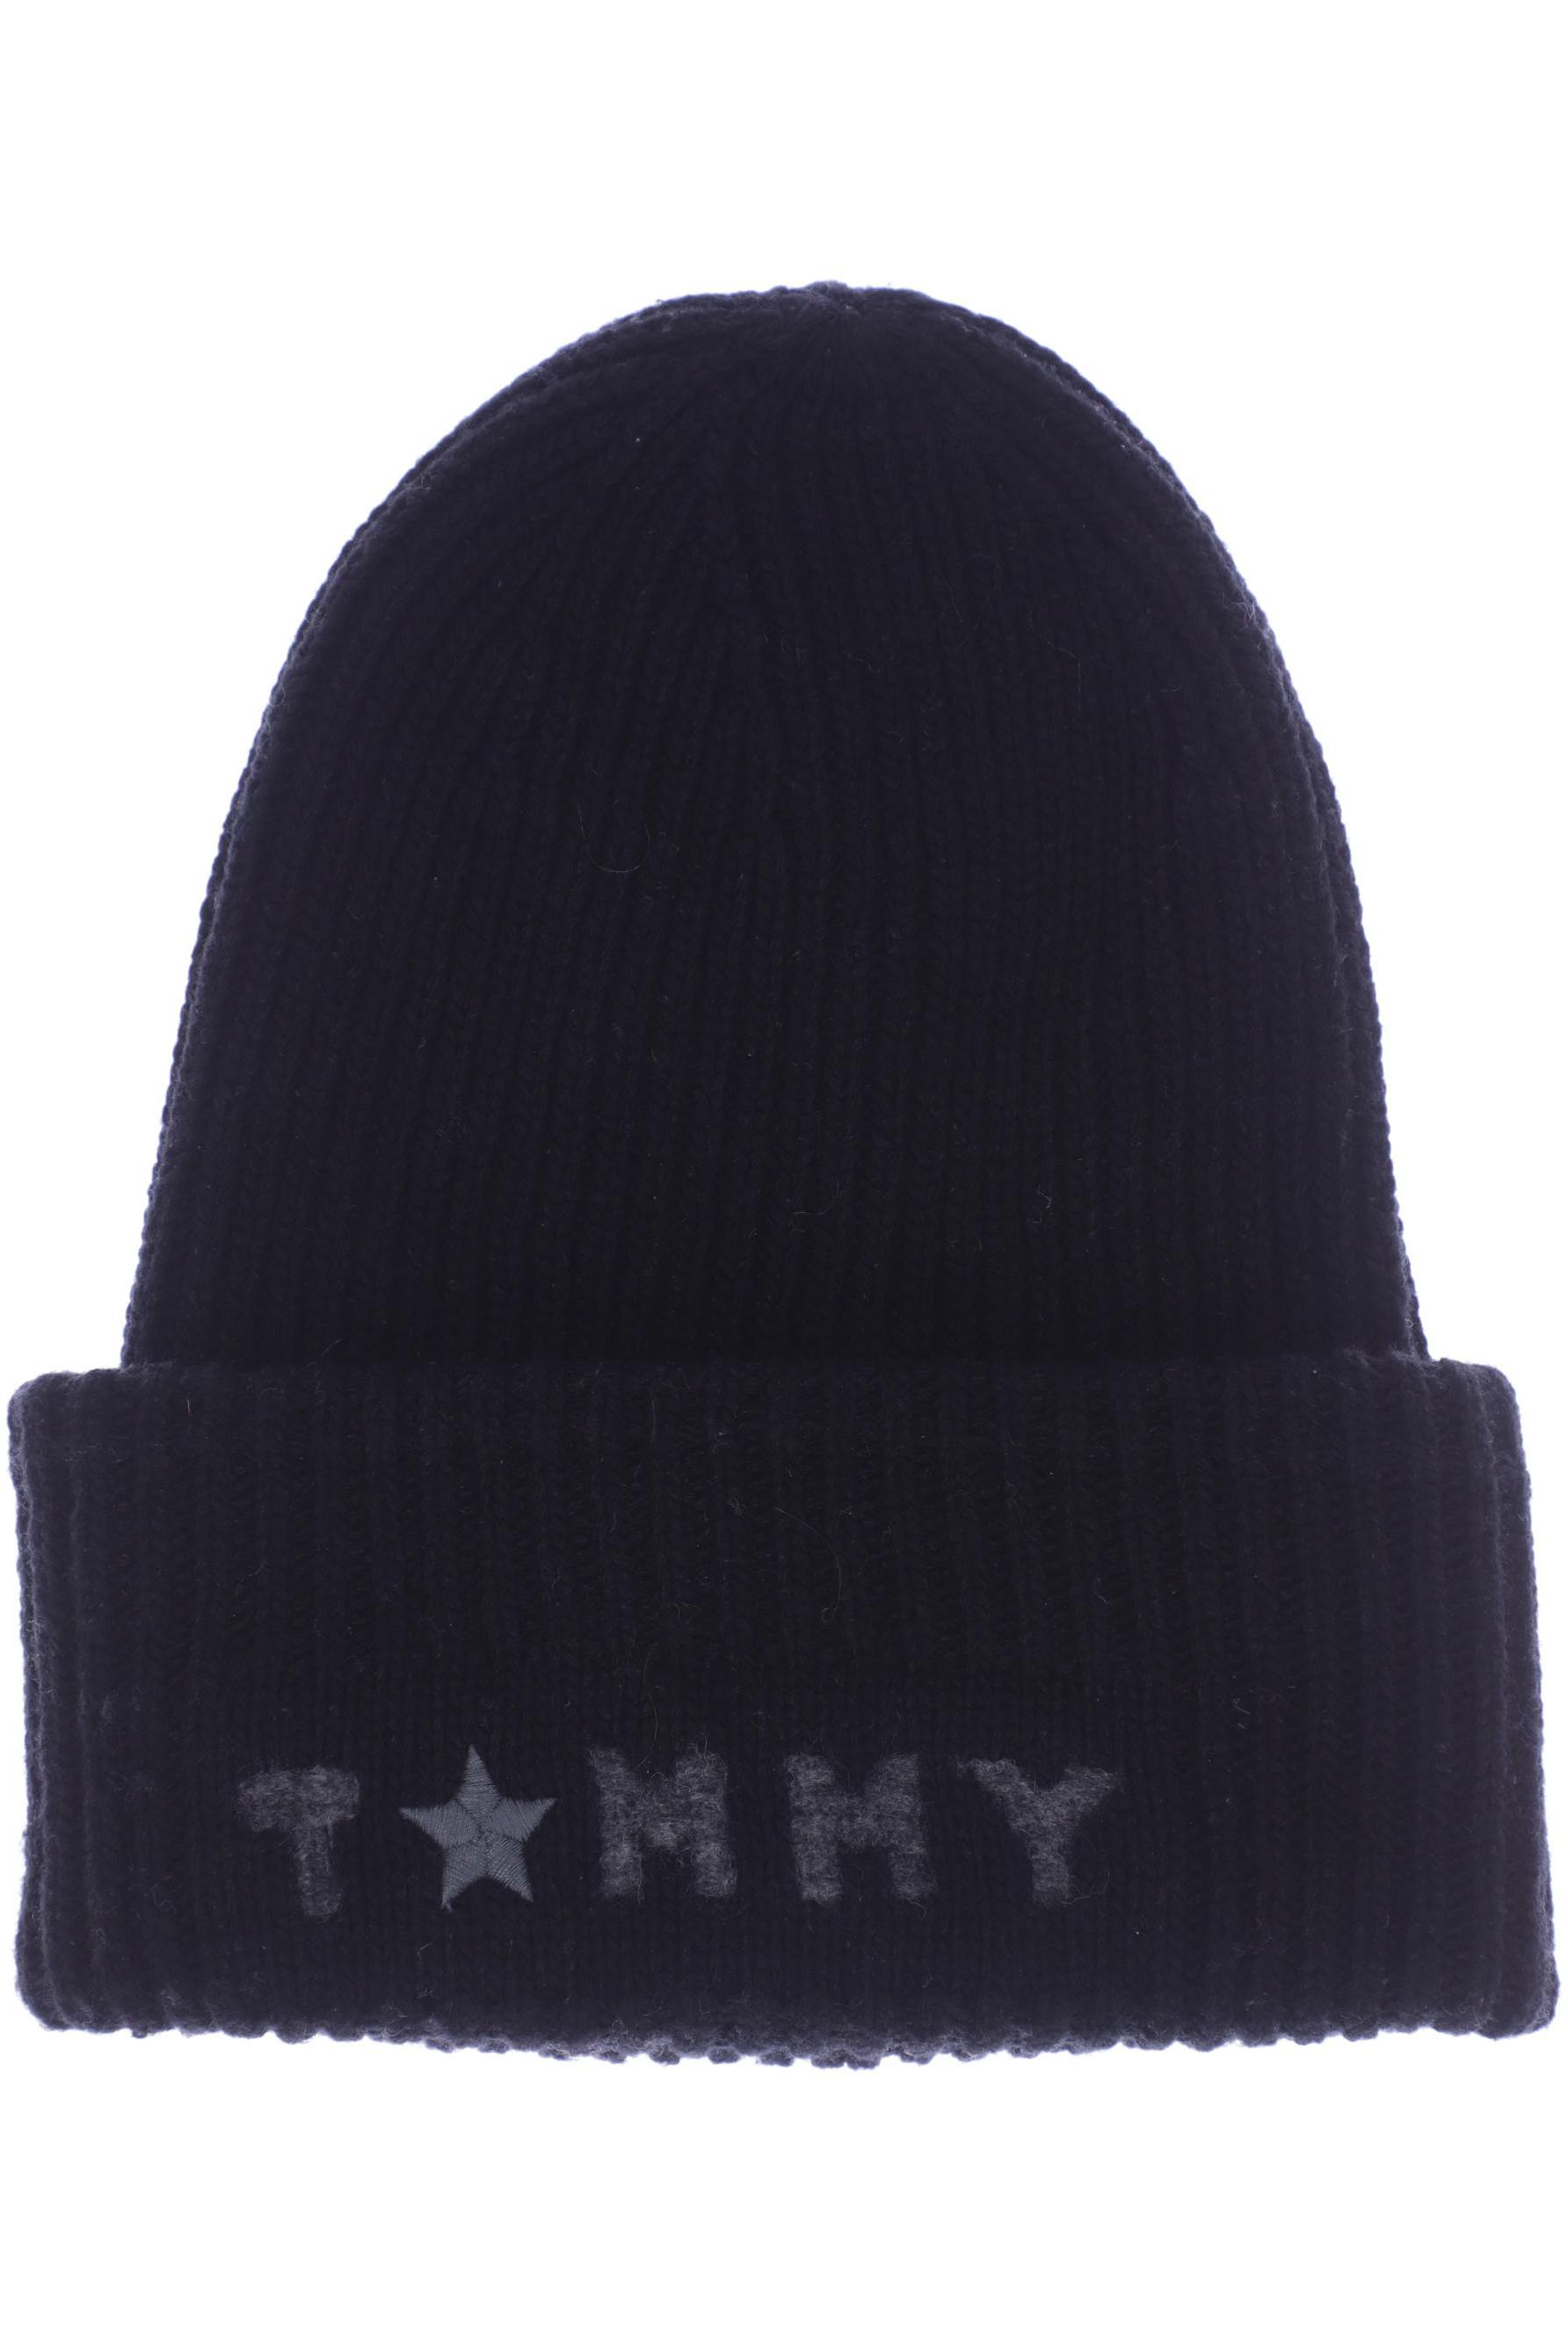 Tommy Hilfiger Damen Hut/Mütze, schwarz von Tommy Hilfiger